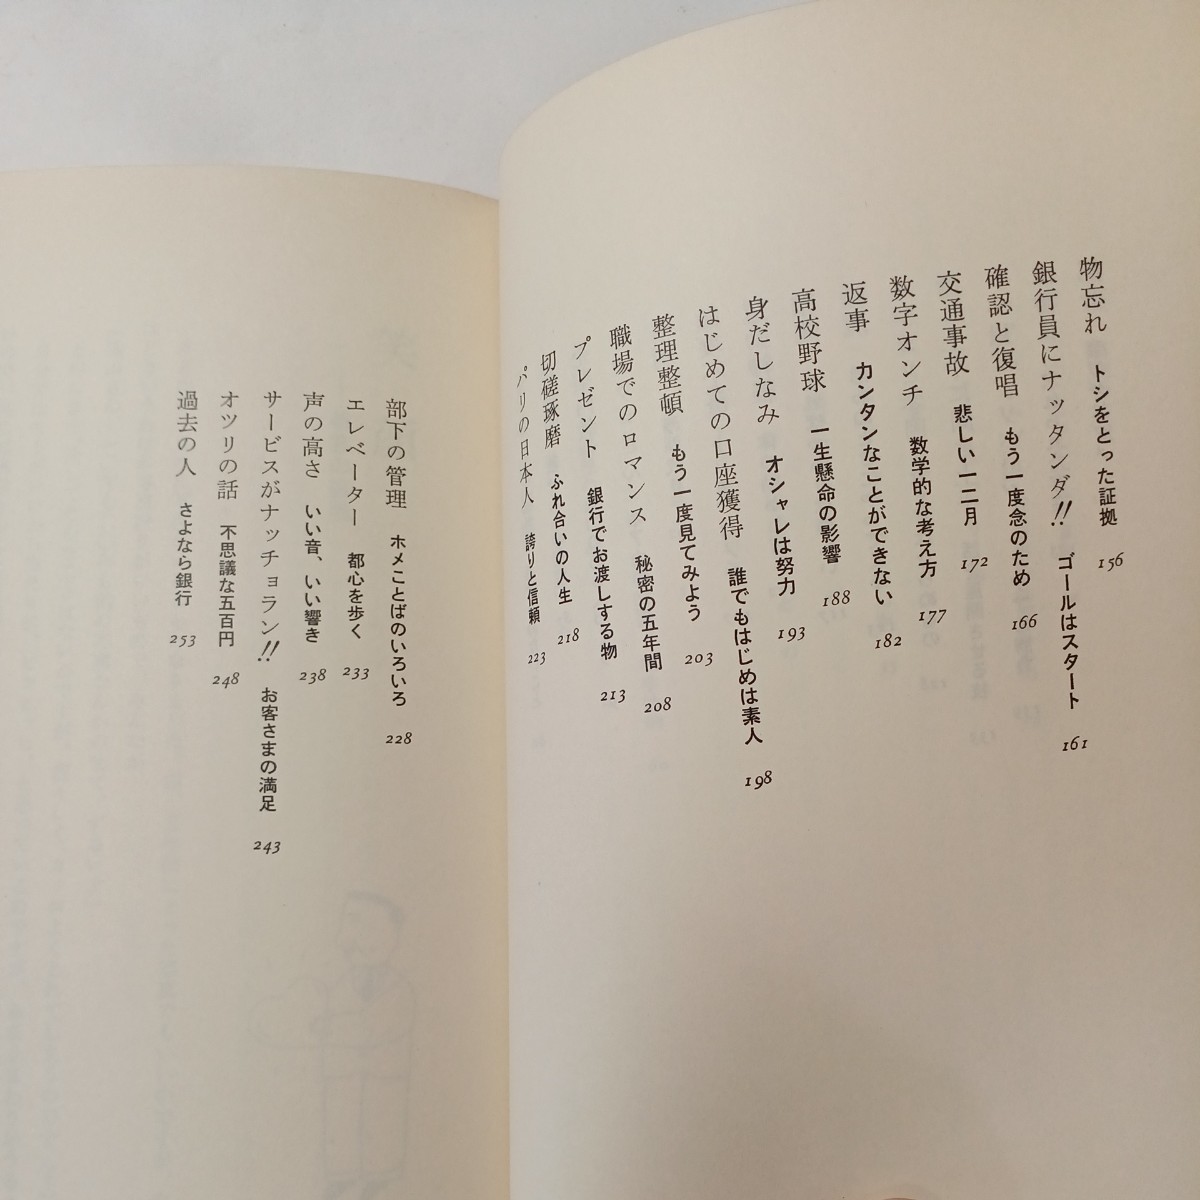 zaa-493♪銀行屋さん奮戦す 　横山信一郎(著) きんざい　 刊行年 昭59 (1984/7/2)